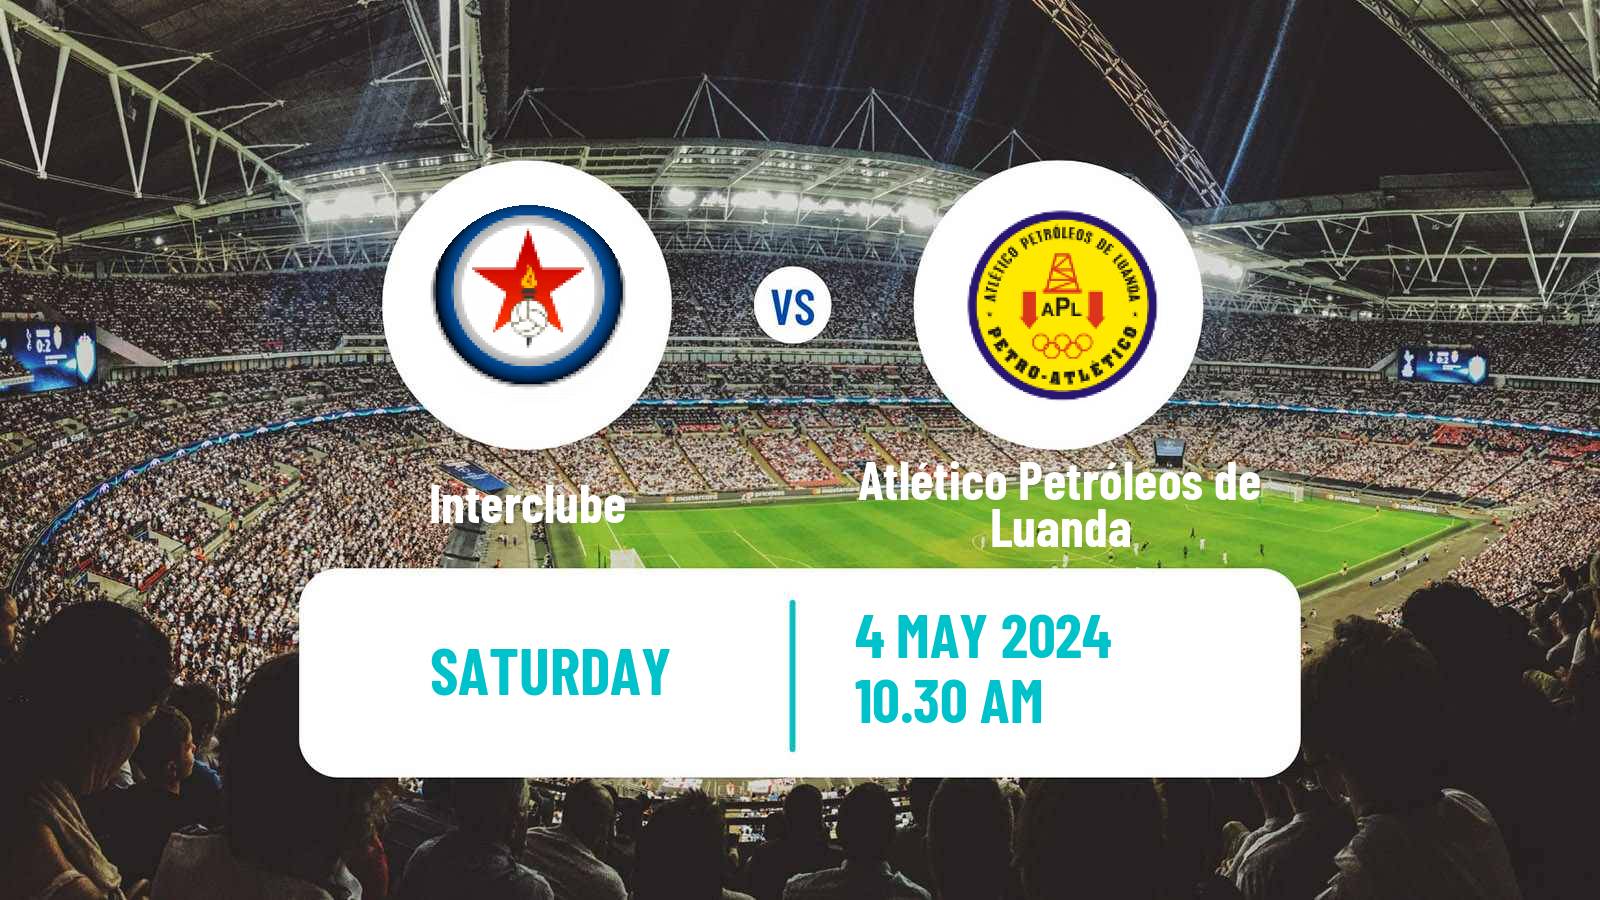 Soccer Angolan Girabola Interclube - Atlético Petróleos de Luanda